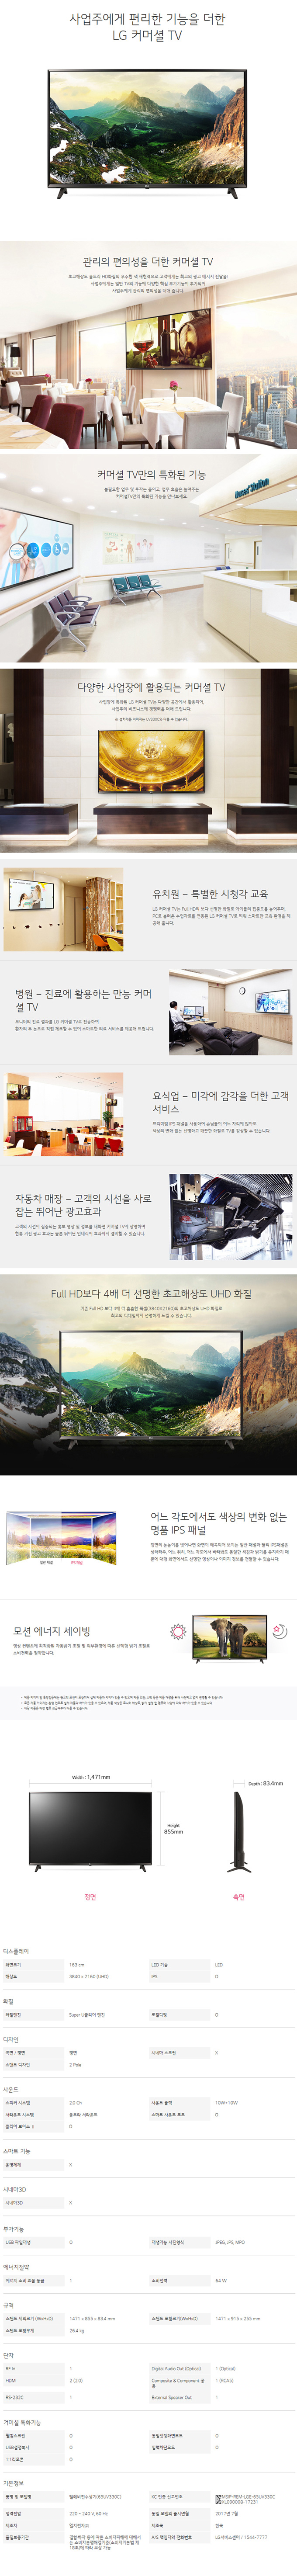 강남케이블 - LG 65인치 UHD TV (65UK681C) 상세보기